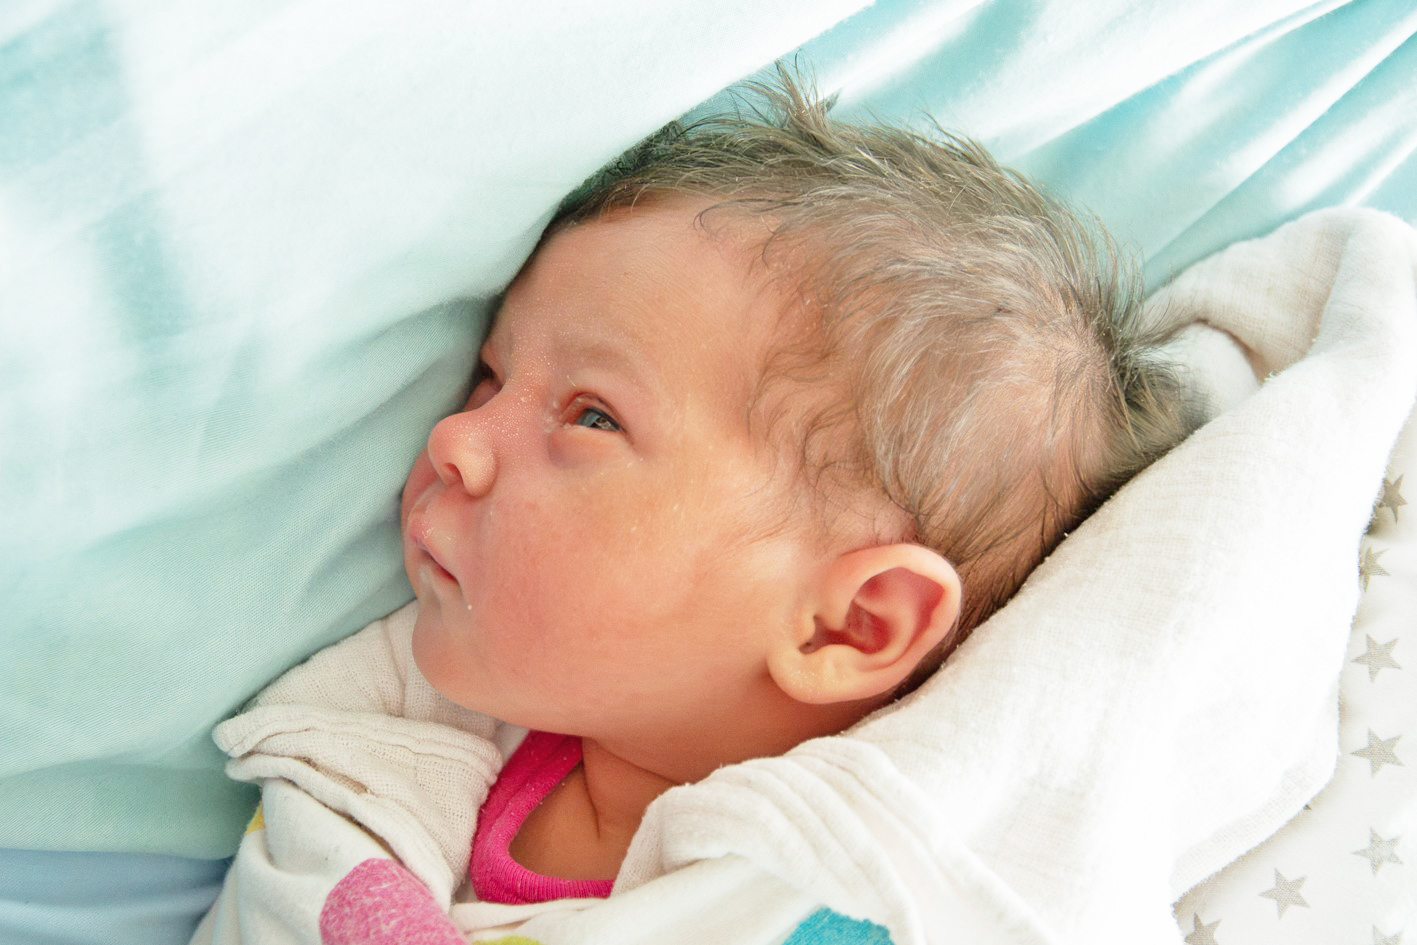 Mała Dorotka Konsik urodziła się 16.09 o godz. 16.57. Dziewczynka ważyła 2880 g i mierzyła 51 cm. Jej rodzicami zostali Patrycja i Roman z Lubomi.